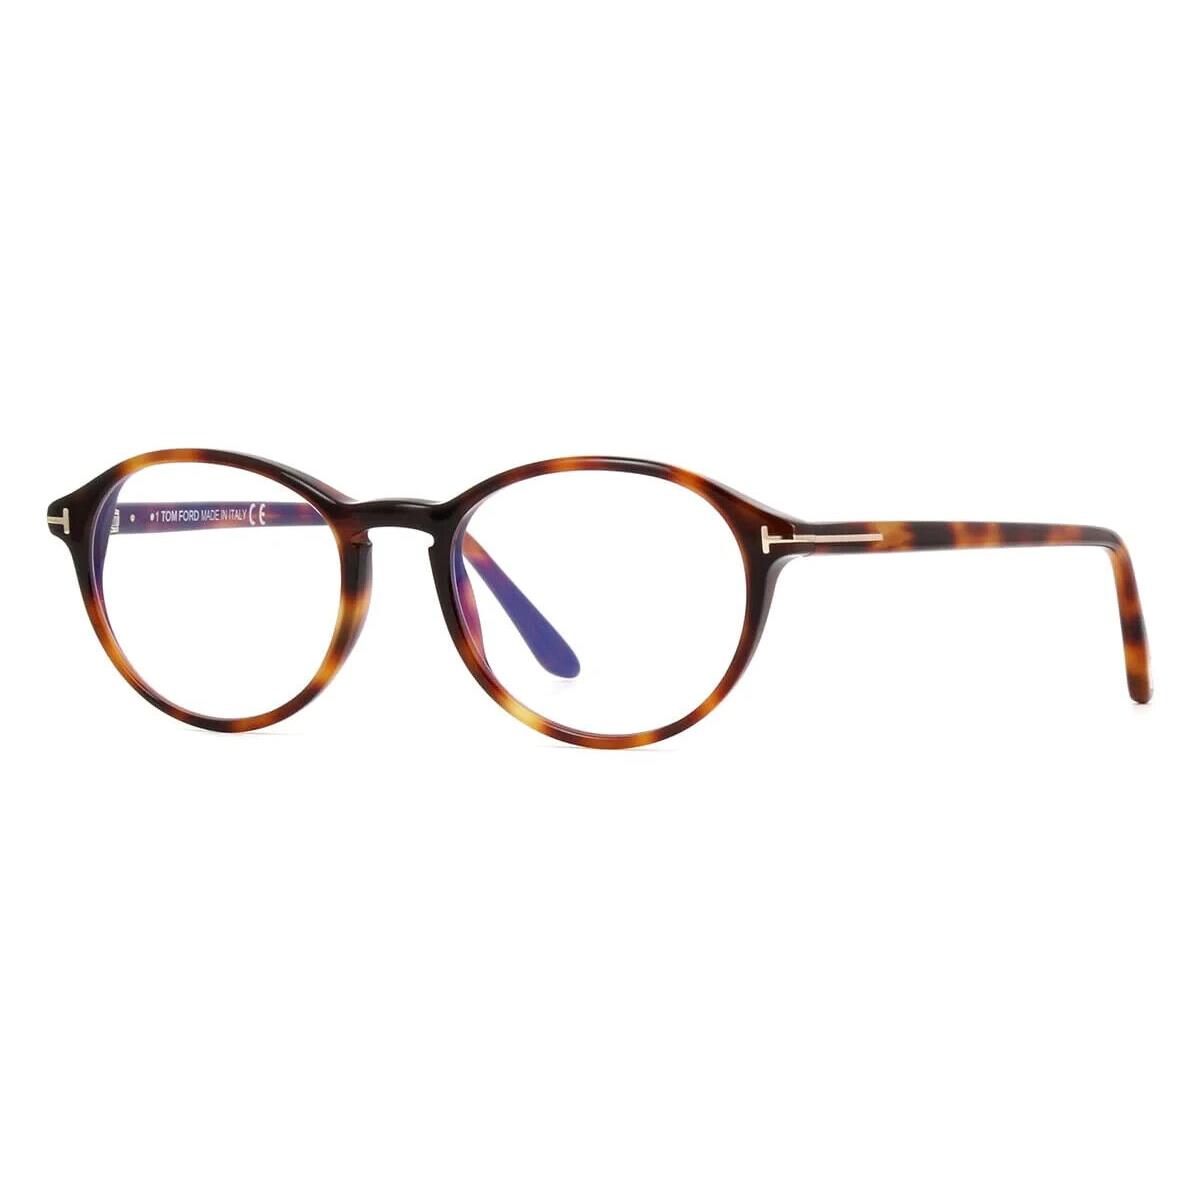 Tom Ford FT TF5753-B 053 Oval Light Havana/blue Block Eyeglasses - Frame: Light Havana